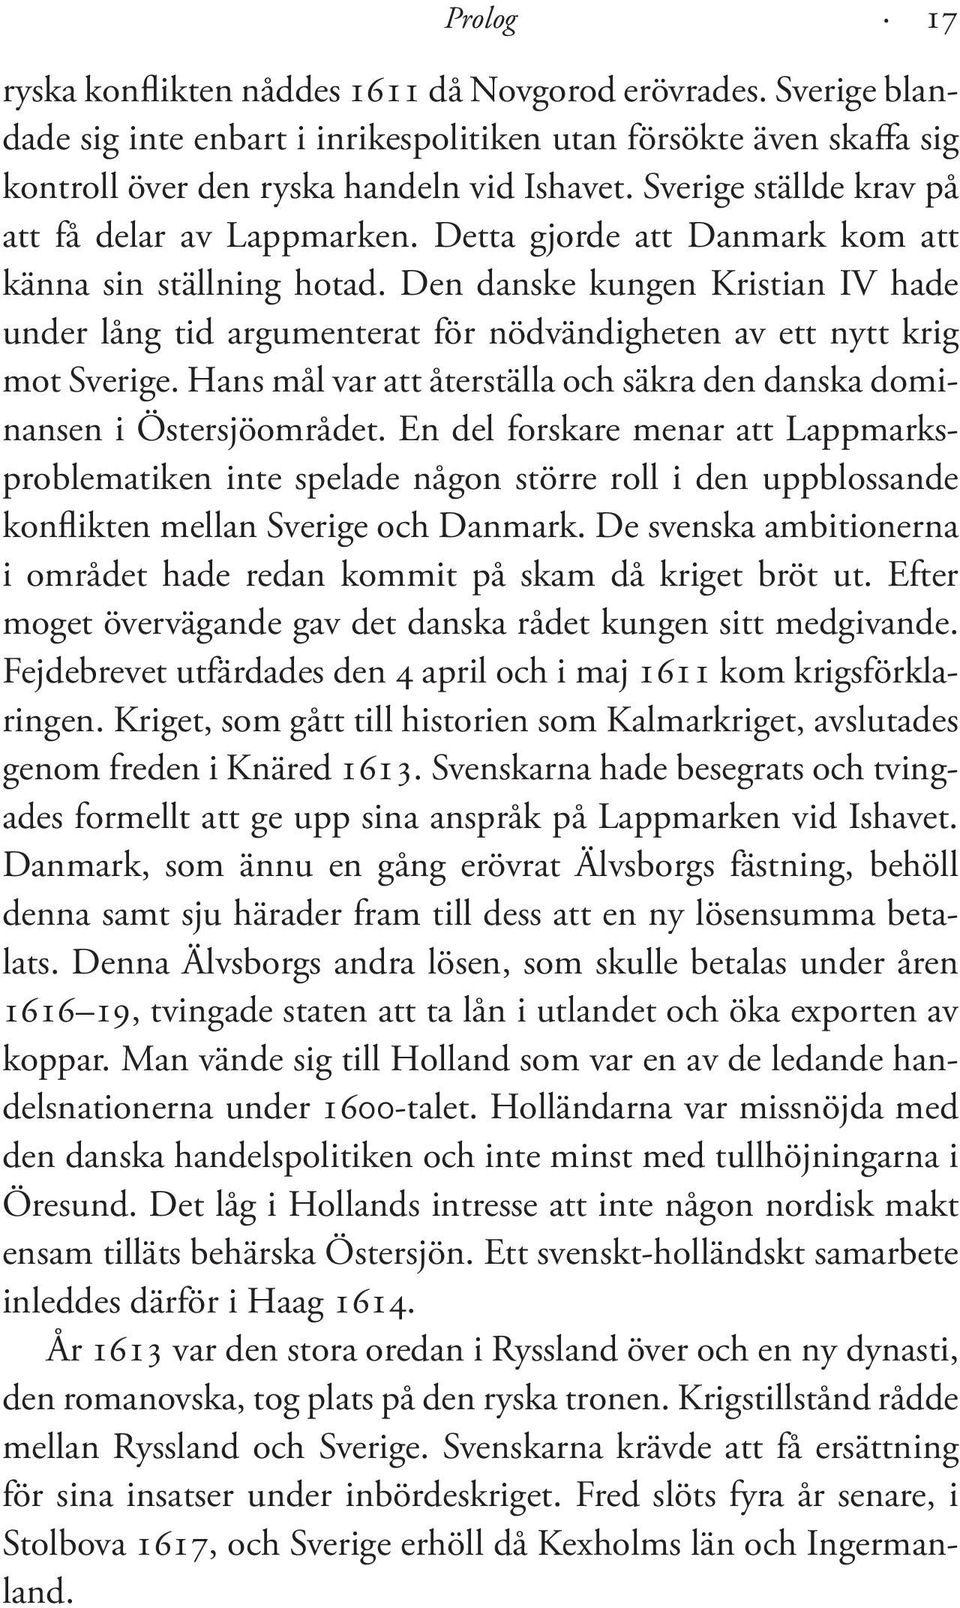 Den danske kungen Kristian IV hade under lång tid argumenterat för nödvändigheten av ett nytt krig mot Sverige. Hans mål var att återställa och säkra den danska dominansen i Östersjöområdet.